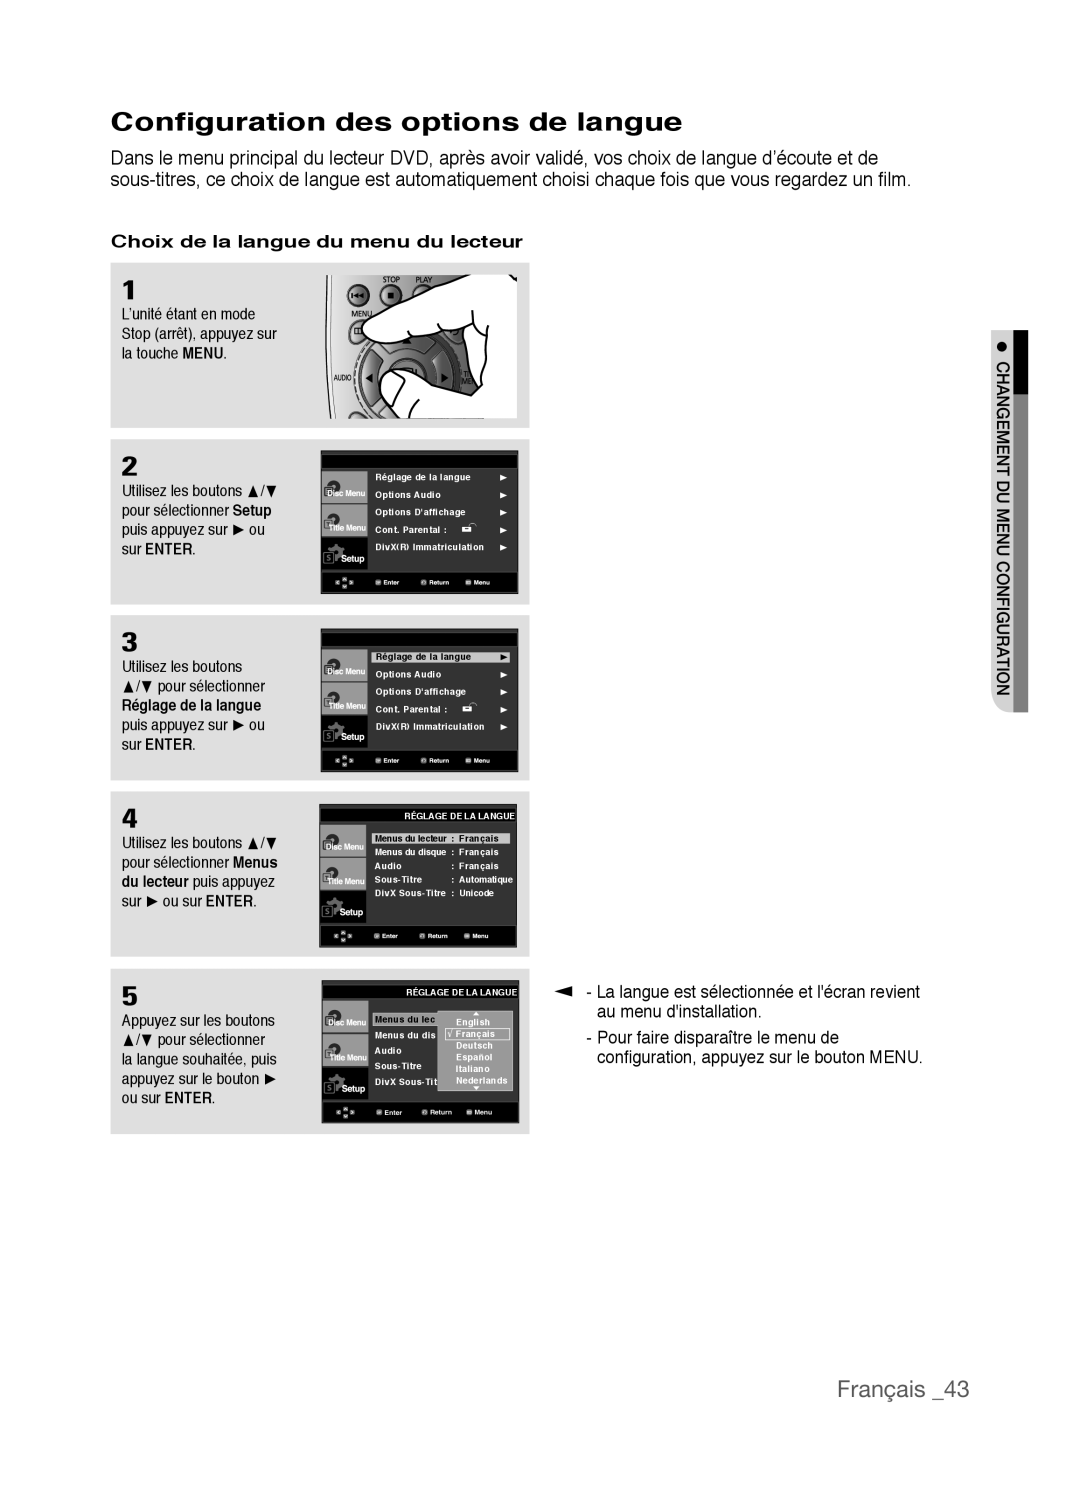 Samsung AK68-01770G, DVD-P390 Configuration des options de langue, Français, Choix de la langue du menu du lecteur 